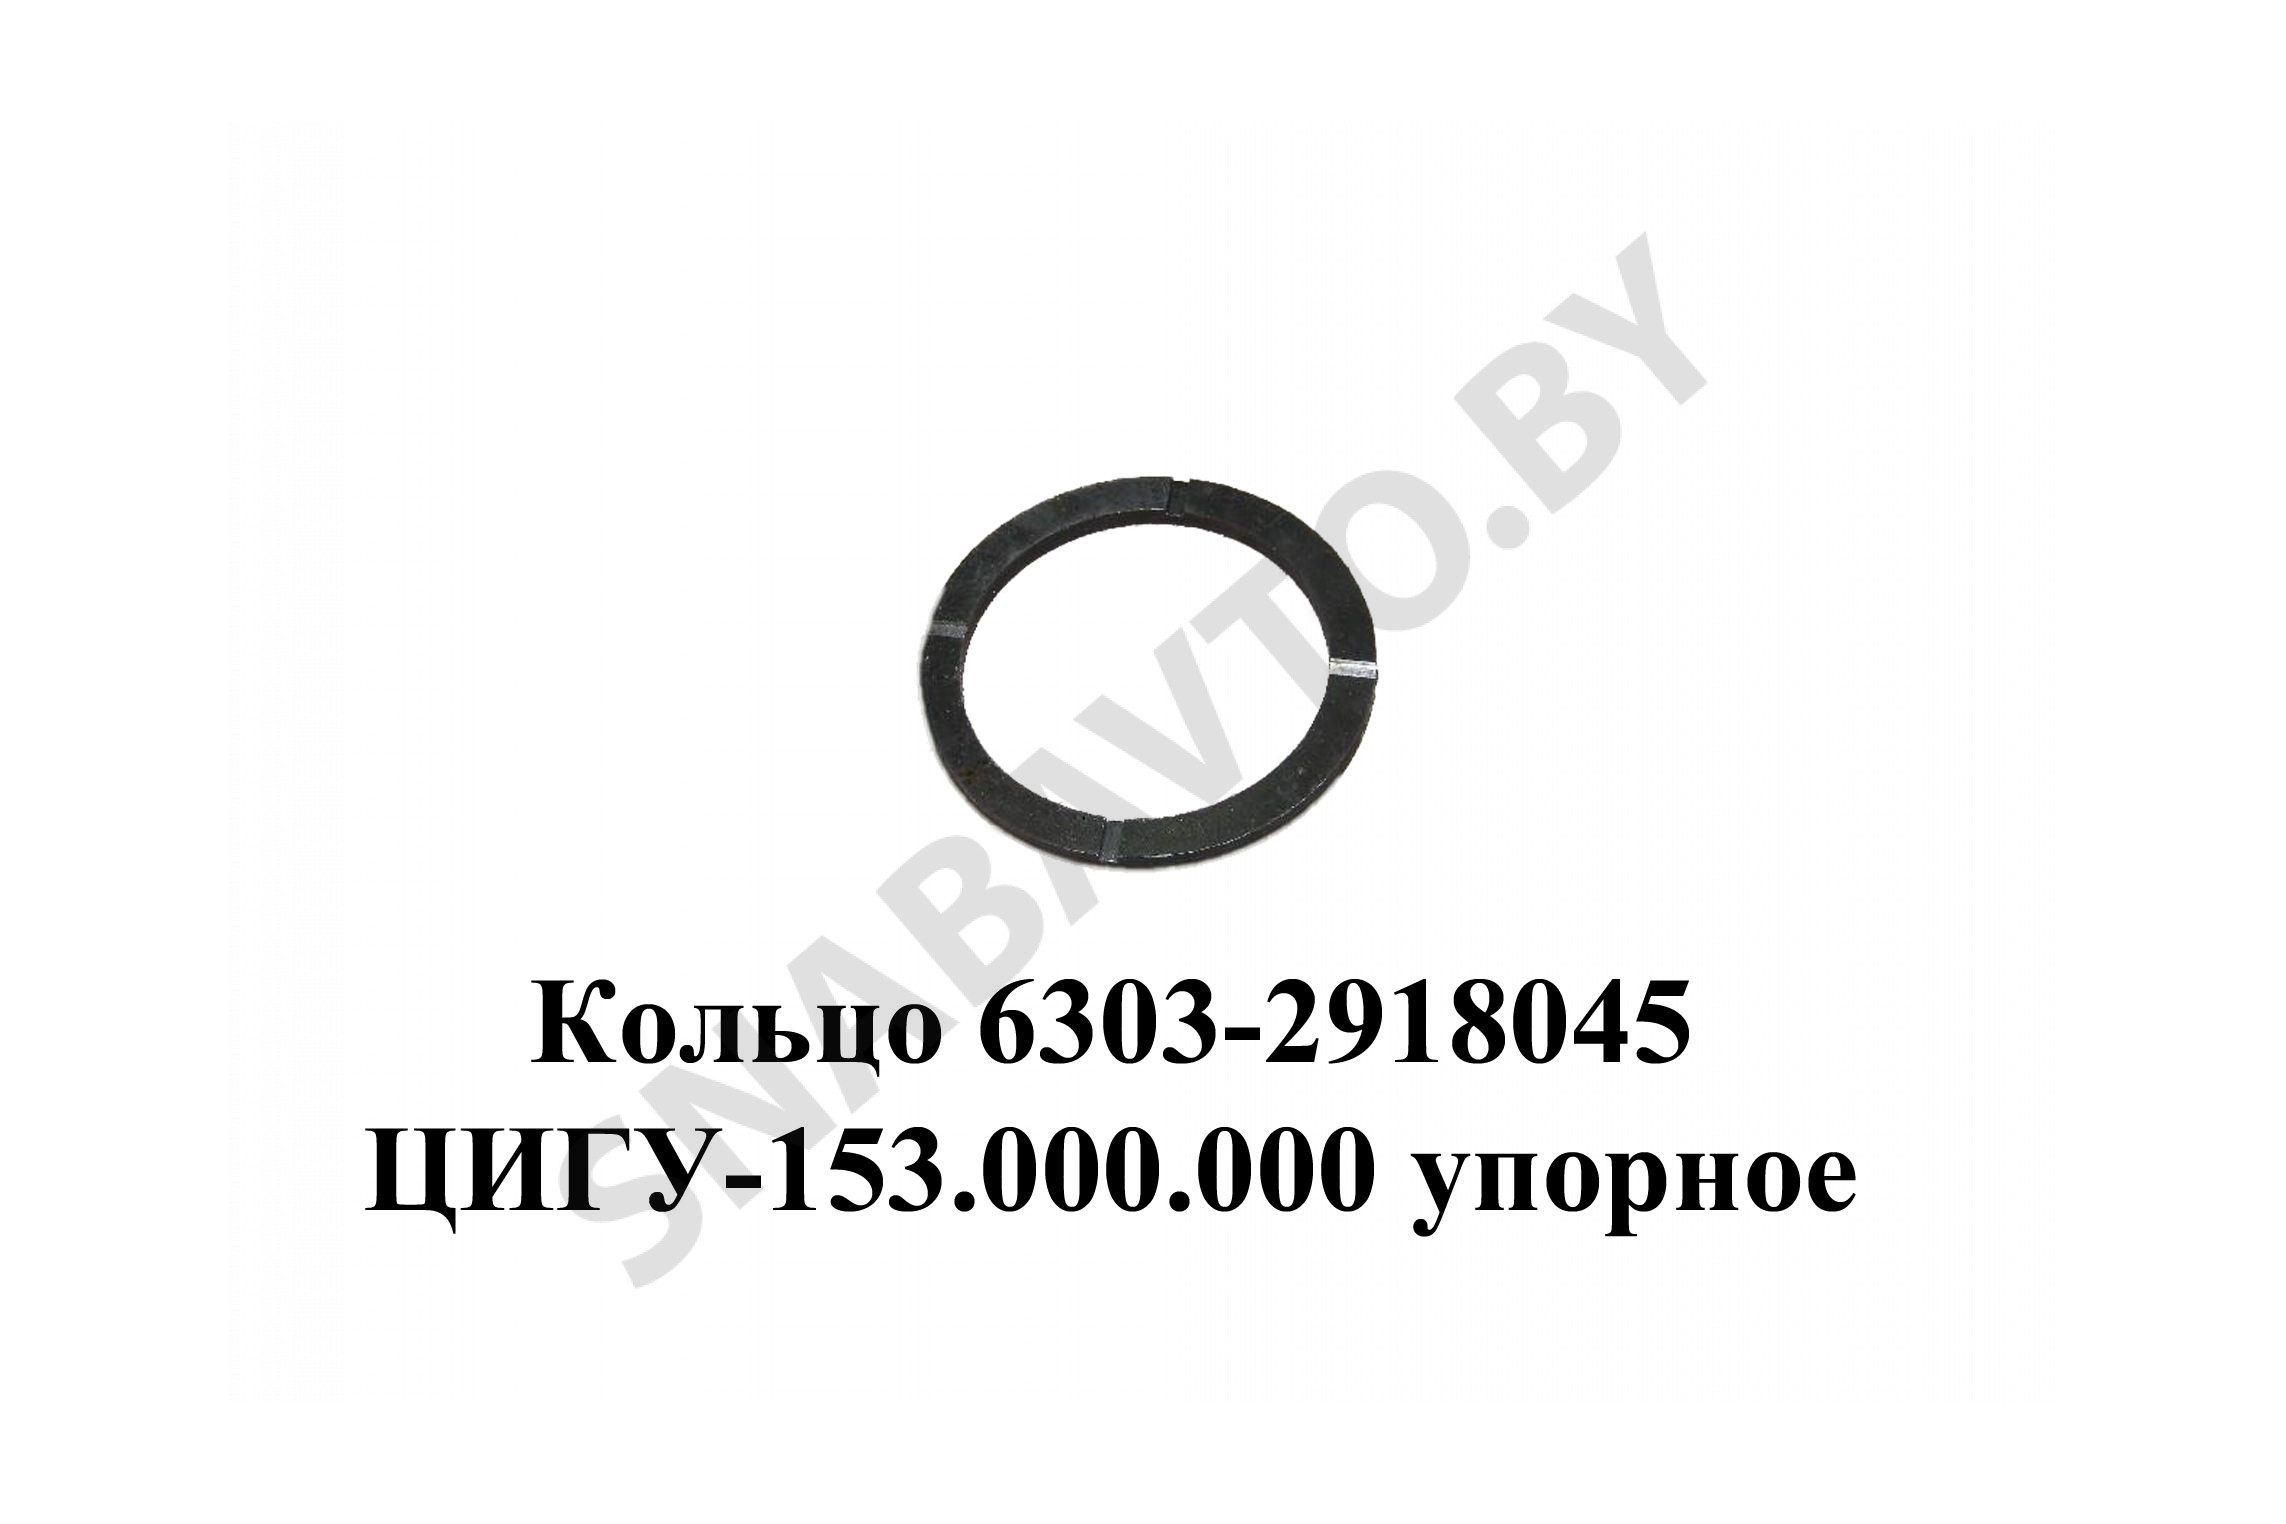 6303-2918045 Кольцо  ЦИГУ-153.000.000 упорное балансира с проточкой